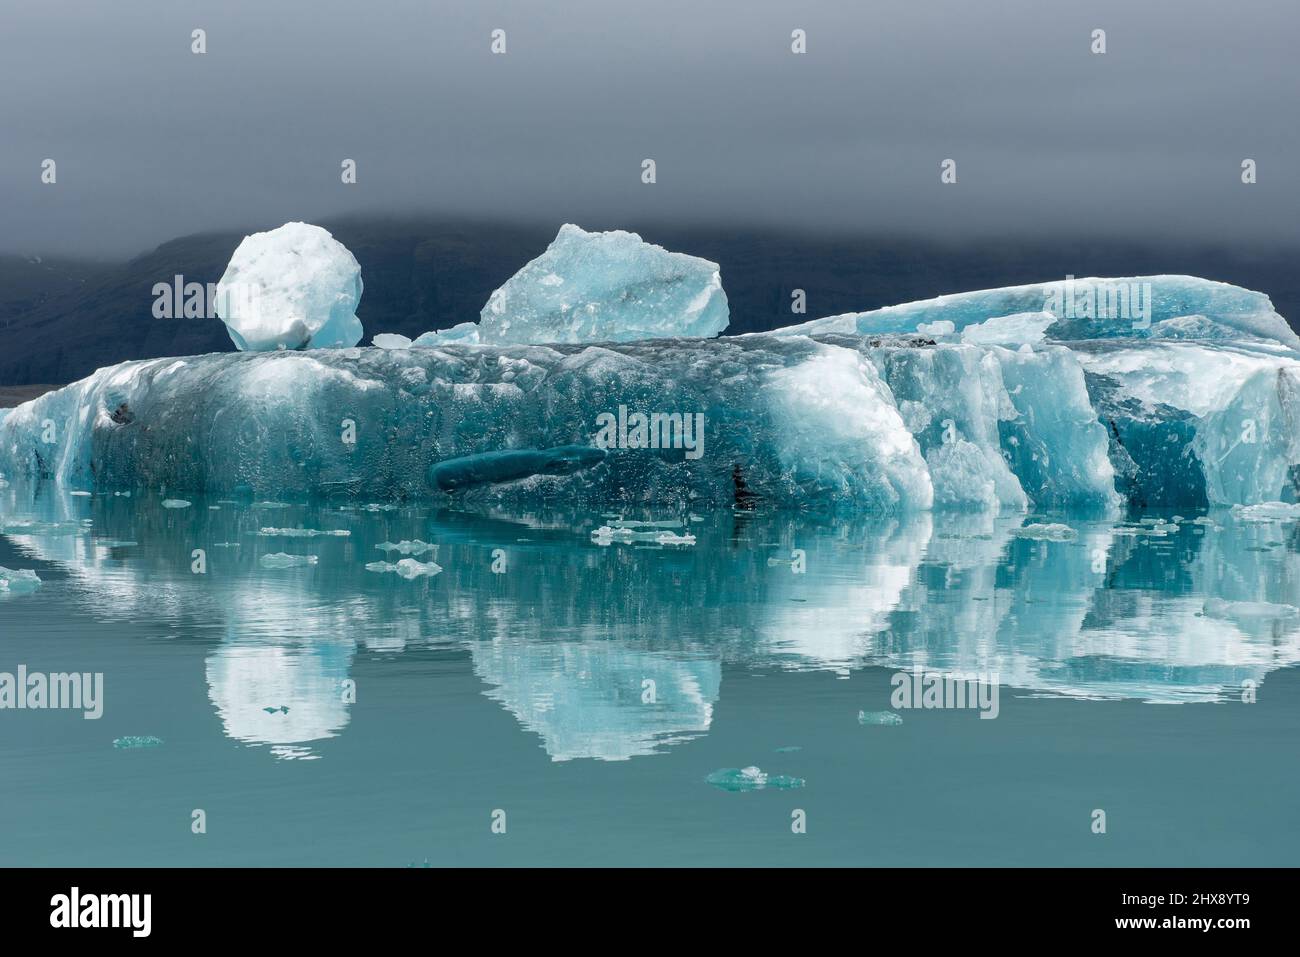 La fonte des icebergs en raison du réchauffement planétaire et du changement climatique en flottant Jokulsarlon glacial lagoon. Parc national du Vatnajökull, Islande Banque D'Images